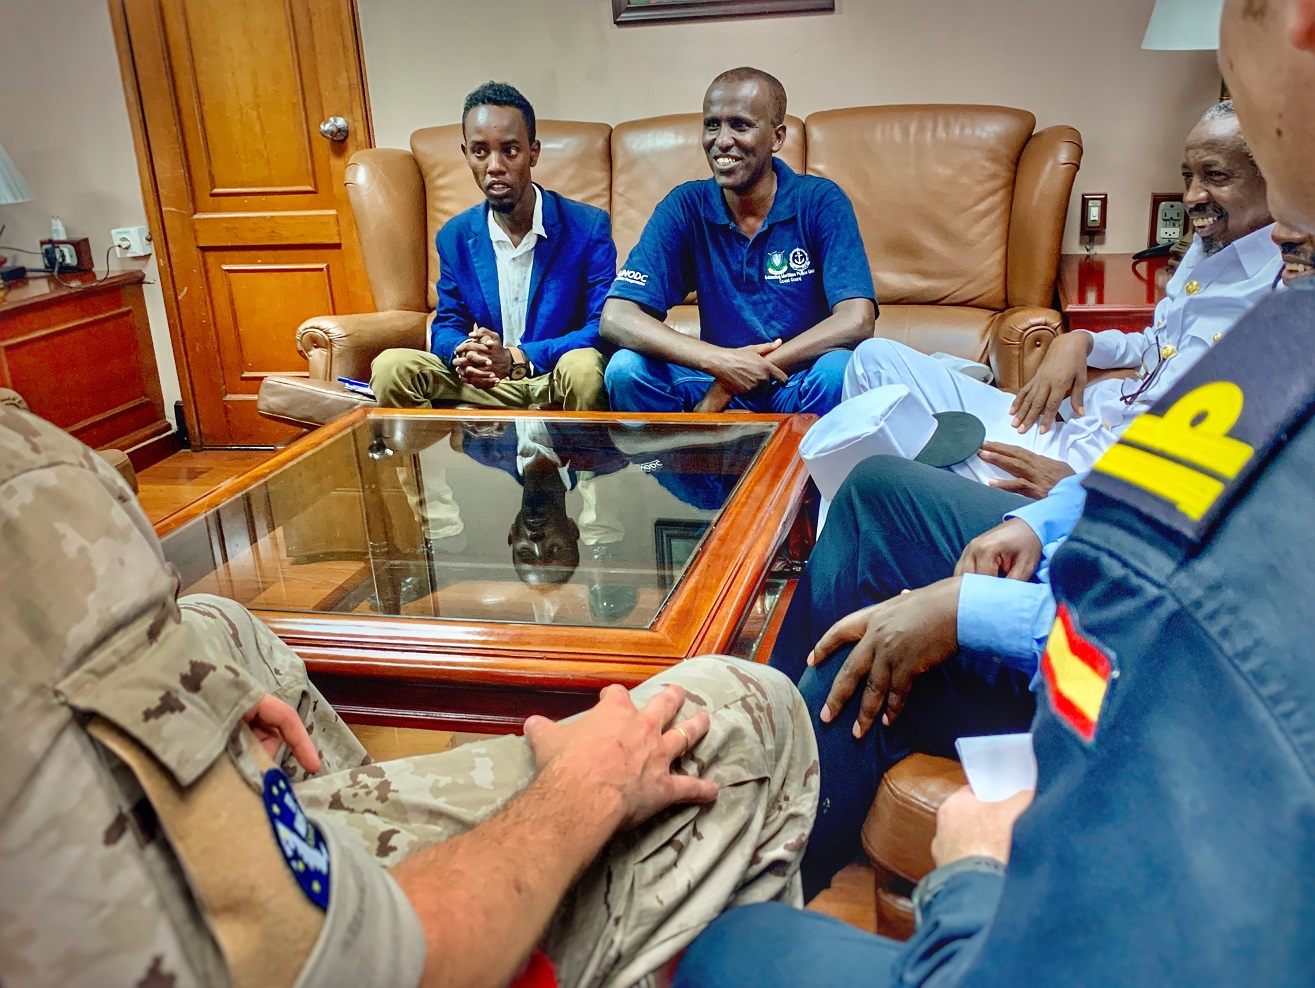 La fragata ‘Victoria’ recibe a bordo a líderes de la región somalí de Galmudug